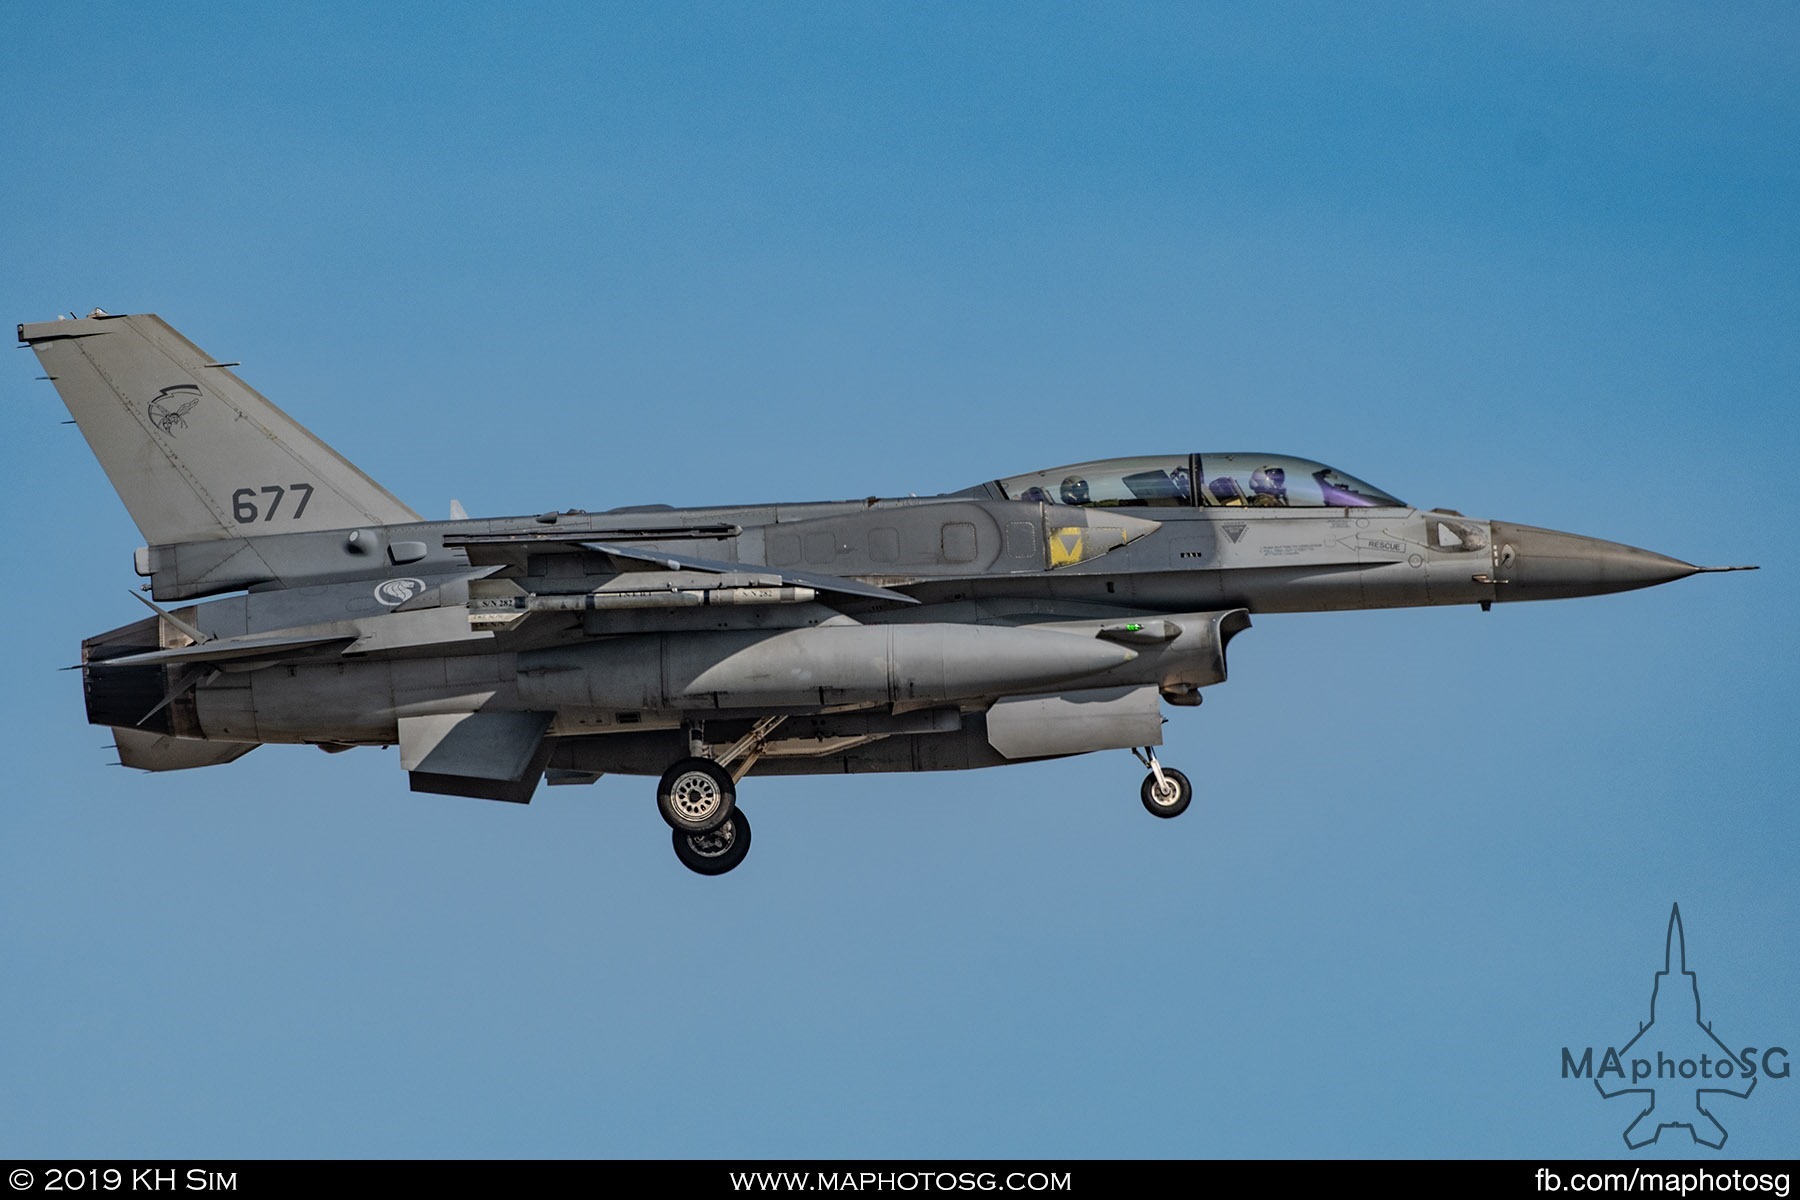 145 SQN F-16D+ (677)